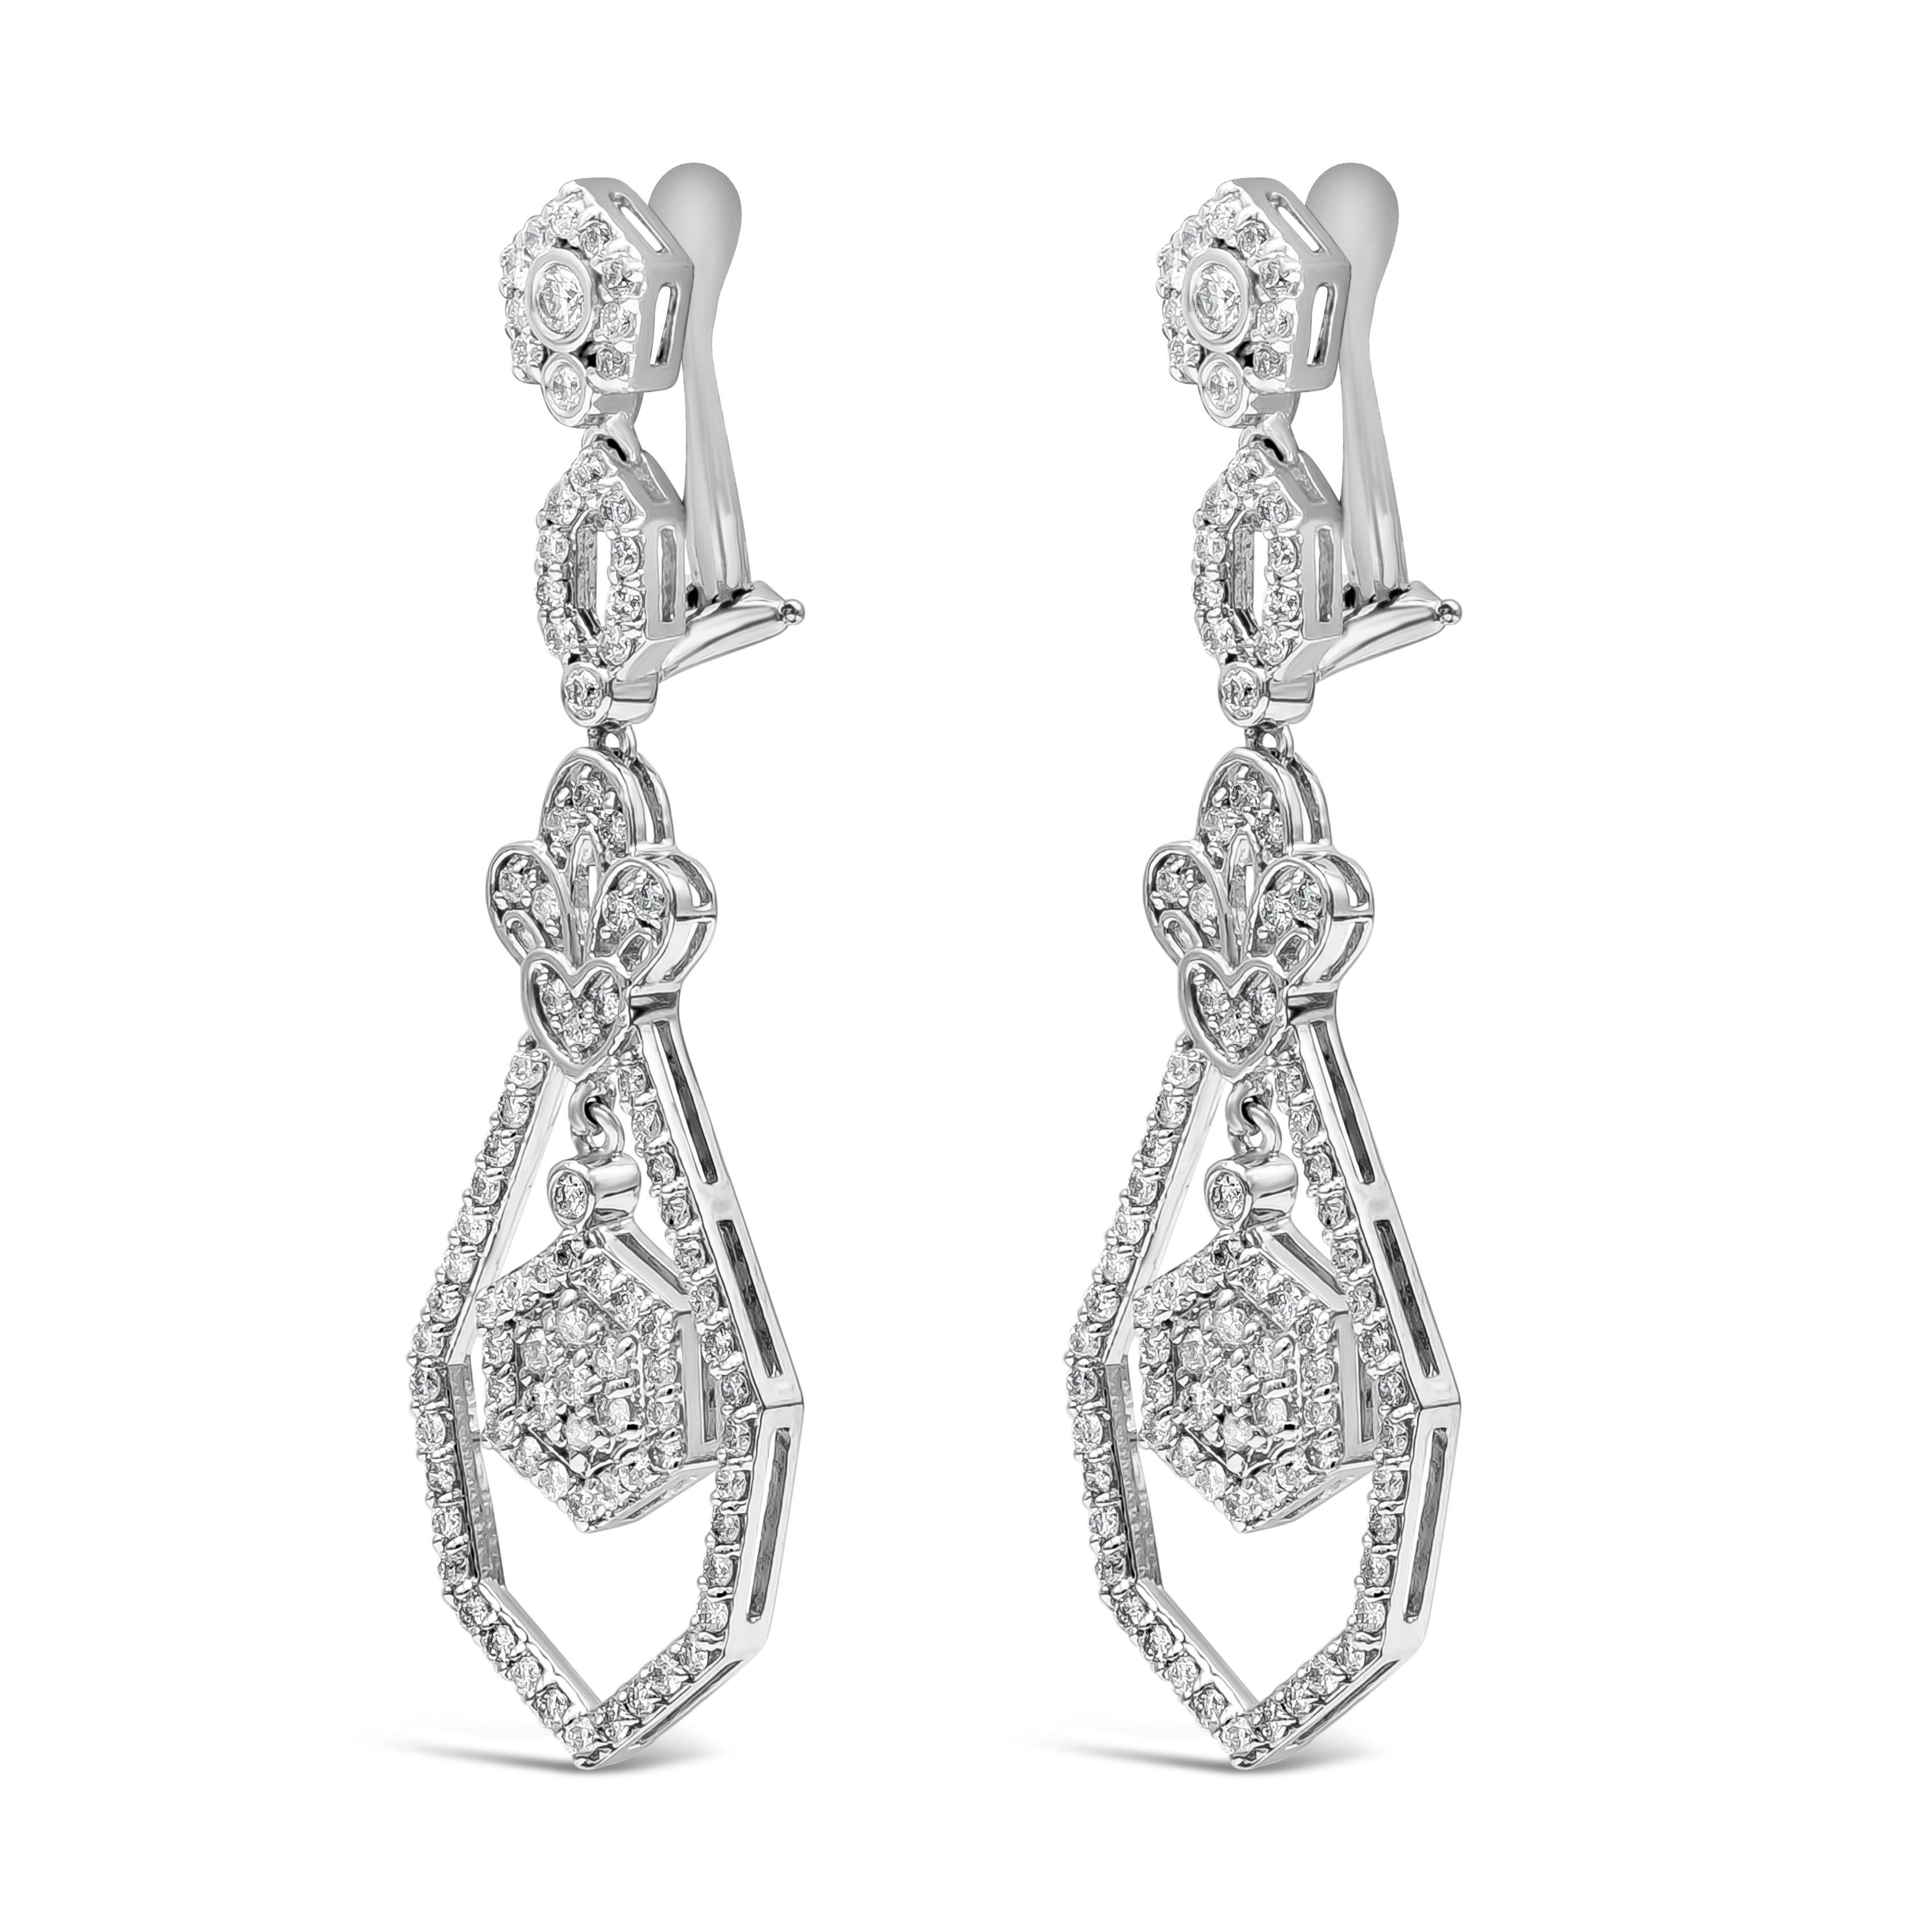 Boucles d'oreilles pendantes en forme de lustre exquis mettant en valeur 184 diamants ronds pesant 1.50 carats au total, de couleur H et de pureté I1. Dans un design ajouré en forme de goutte avec un aspect antique. Fabriqué en or blanc 14K. 

Style